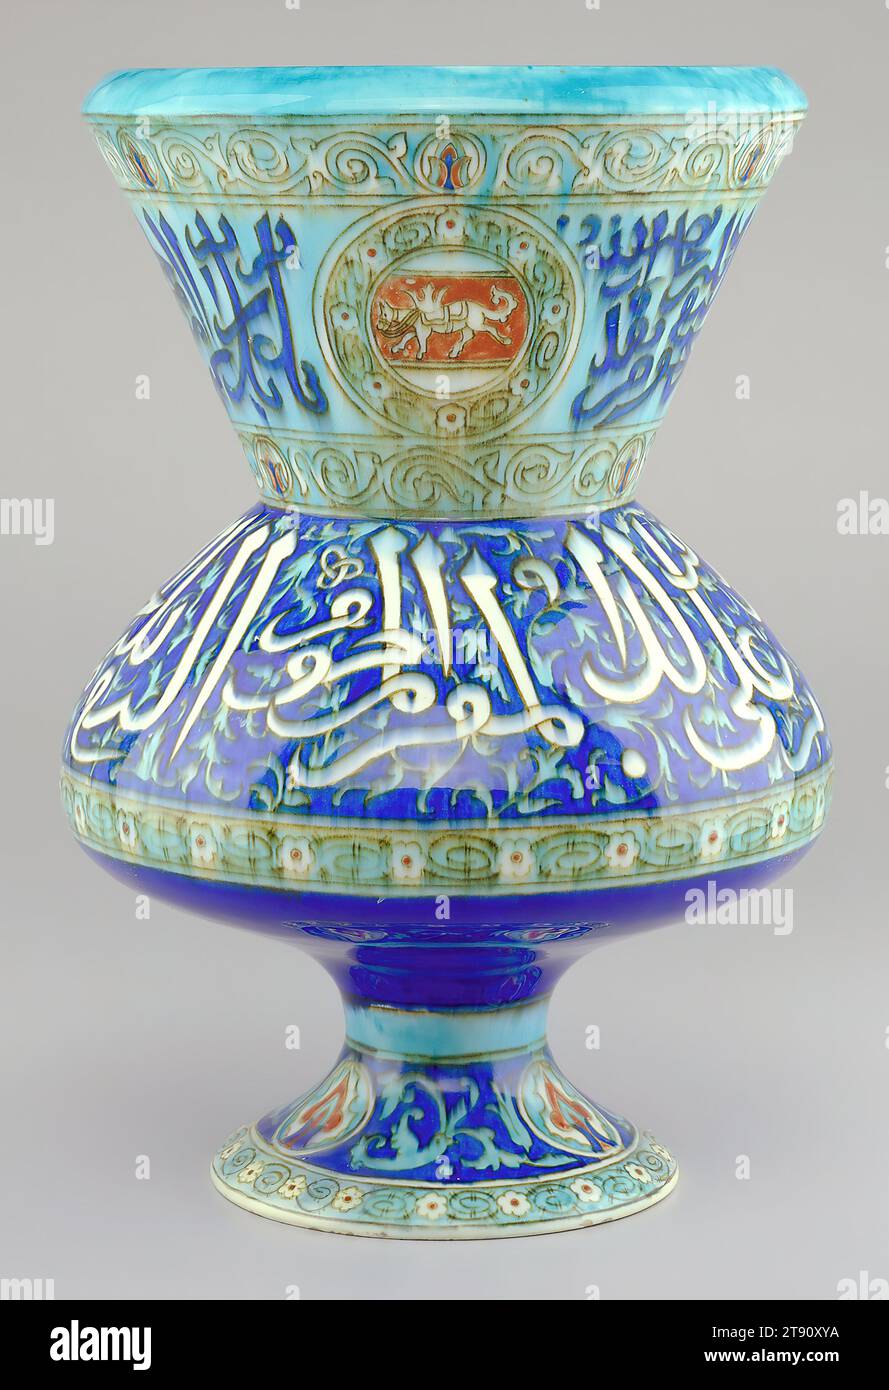 Vase en forme de lampe de mosquée, c. 1870, Joseph-Théodore Deck, français, 1823-1891, 14 1/4 x 10 x 10 po (36,2 x 25,4 x 25,4 cm), faïence émaillée d'étain, France, 19e siècle, l'intérêt et l'habileté de Théodore Deck pour reproduire les motifs et les couleurs traditionnelles perses sont visibles avec ce vase. Il est décoré en lettres arabes et la couleur bleu turquoise vif souvent associée aux marchandises Isnik. En fait, la forme de ce vase est inspirée des lampes de mosquée islamiques fabriquées en Syrie et en Egypte au 14e siècle. Les objets et motifs anciens du Moyen-Orient se sont avérés être des sources populaires Banque D'Images